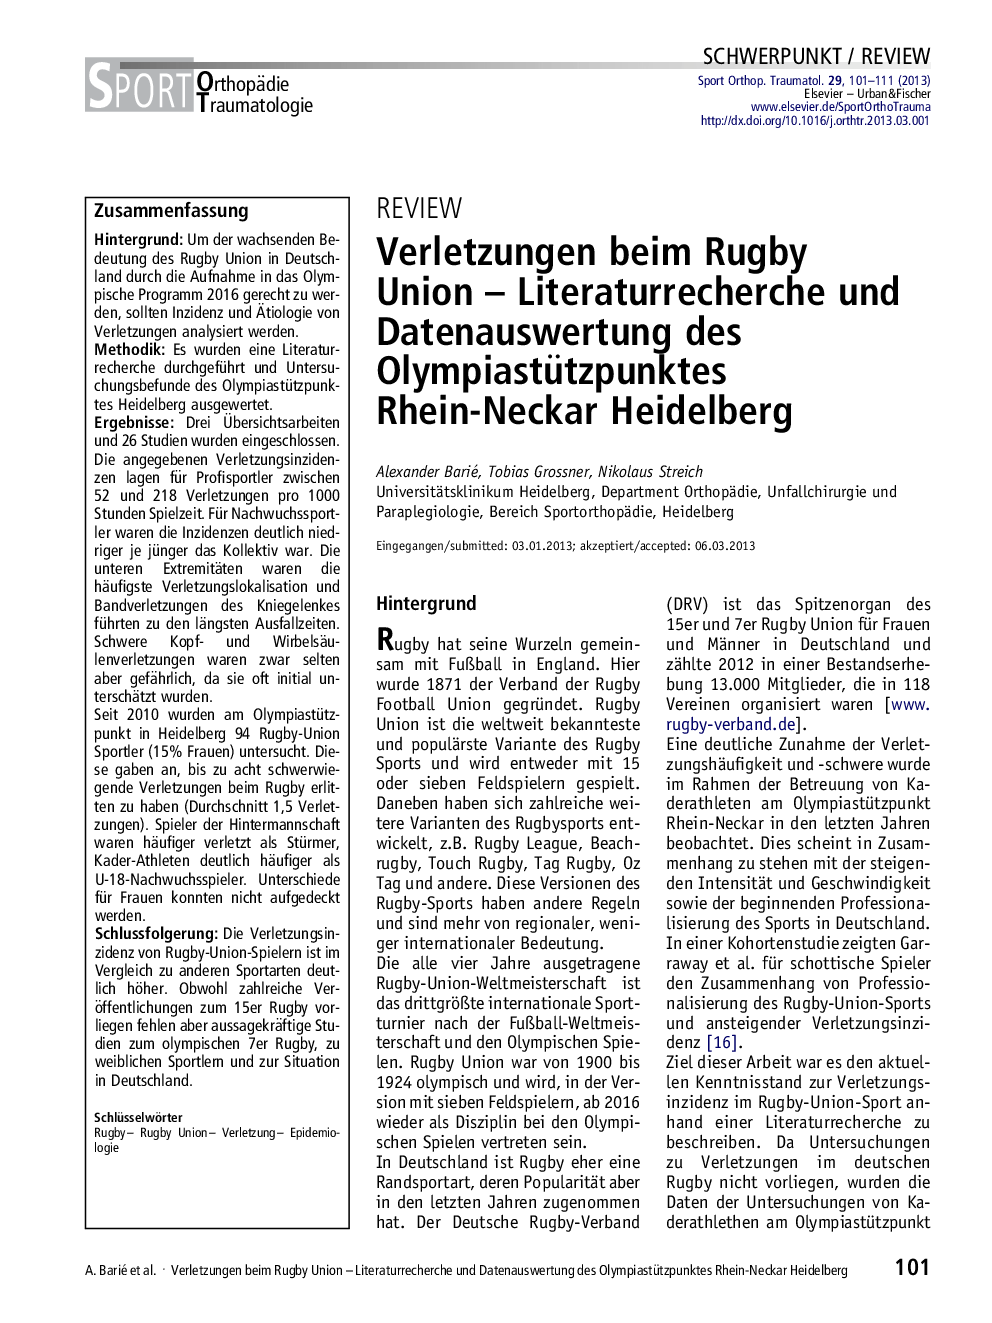 Verletzungen beim Rugby Union – Literaturrecherche und Datenauswertung des Olympiastützpunktes Rhein-Neckar Heidelberg